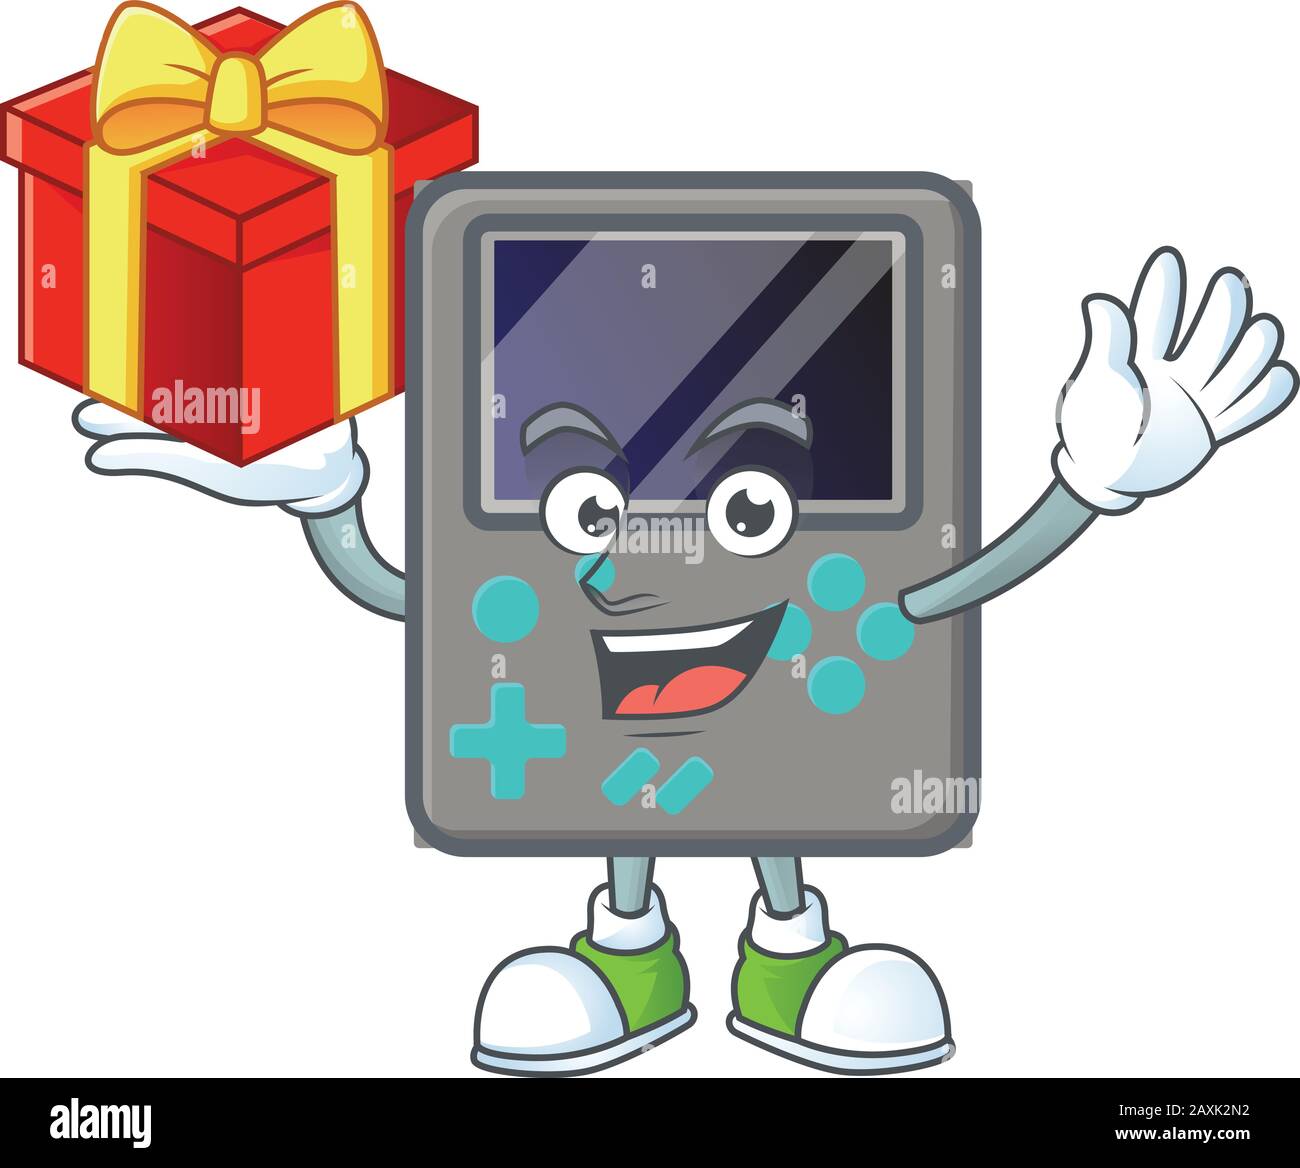 personnage de dessin animé de la console de jeu avec une boîte de cadeau Illustration de Vecteur